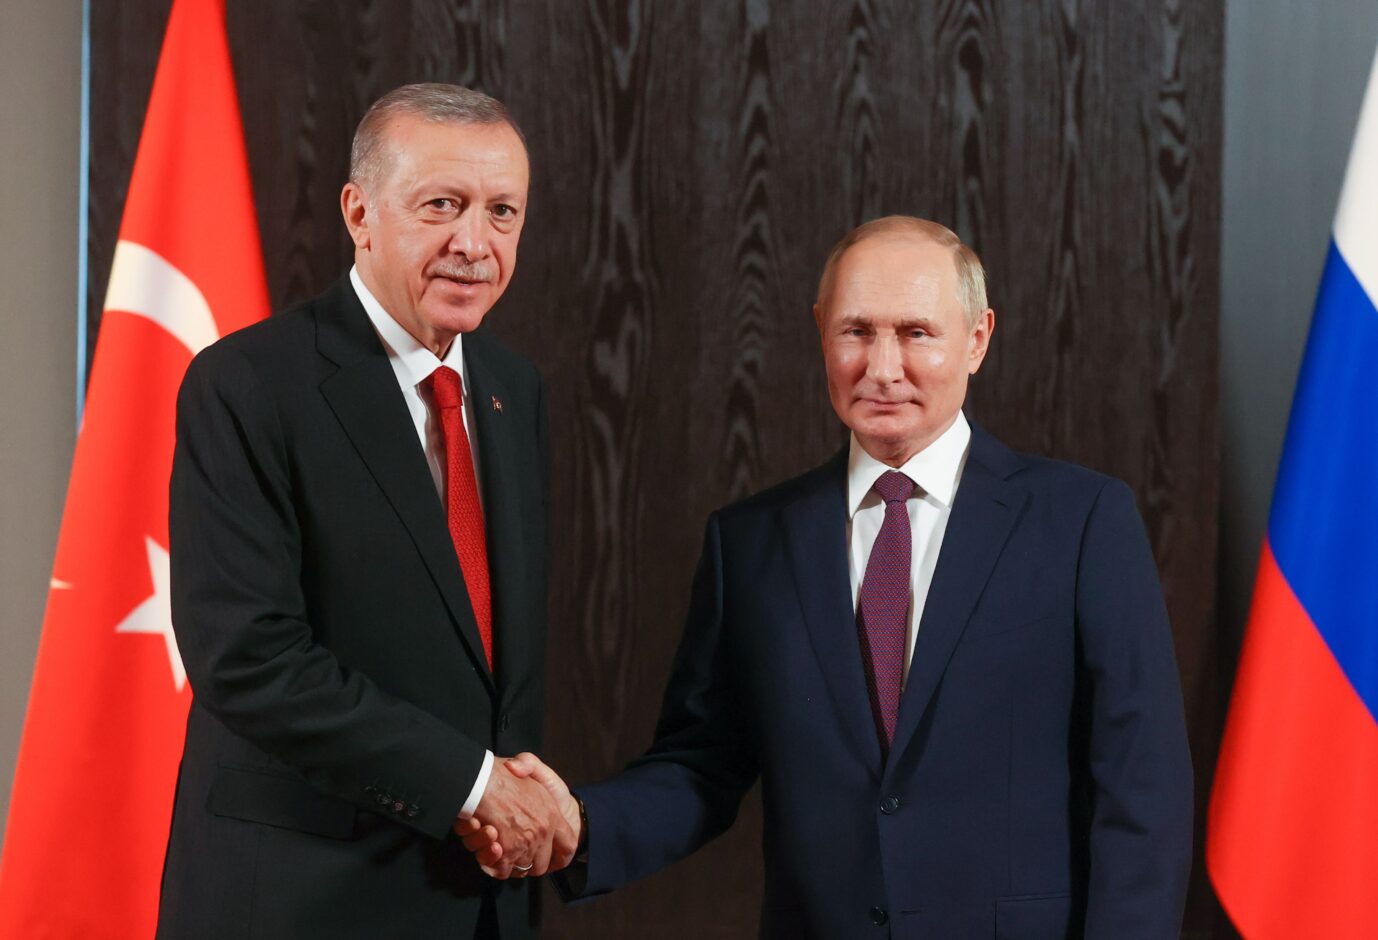 Der Präsident von Nato-Partner Türkei, Erdogan, schüttelt dem Präsidenten von Rußland, Putin, die Hand auf einem Treffen der SCO (Shanghai Cooperation Organization) im September 2022